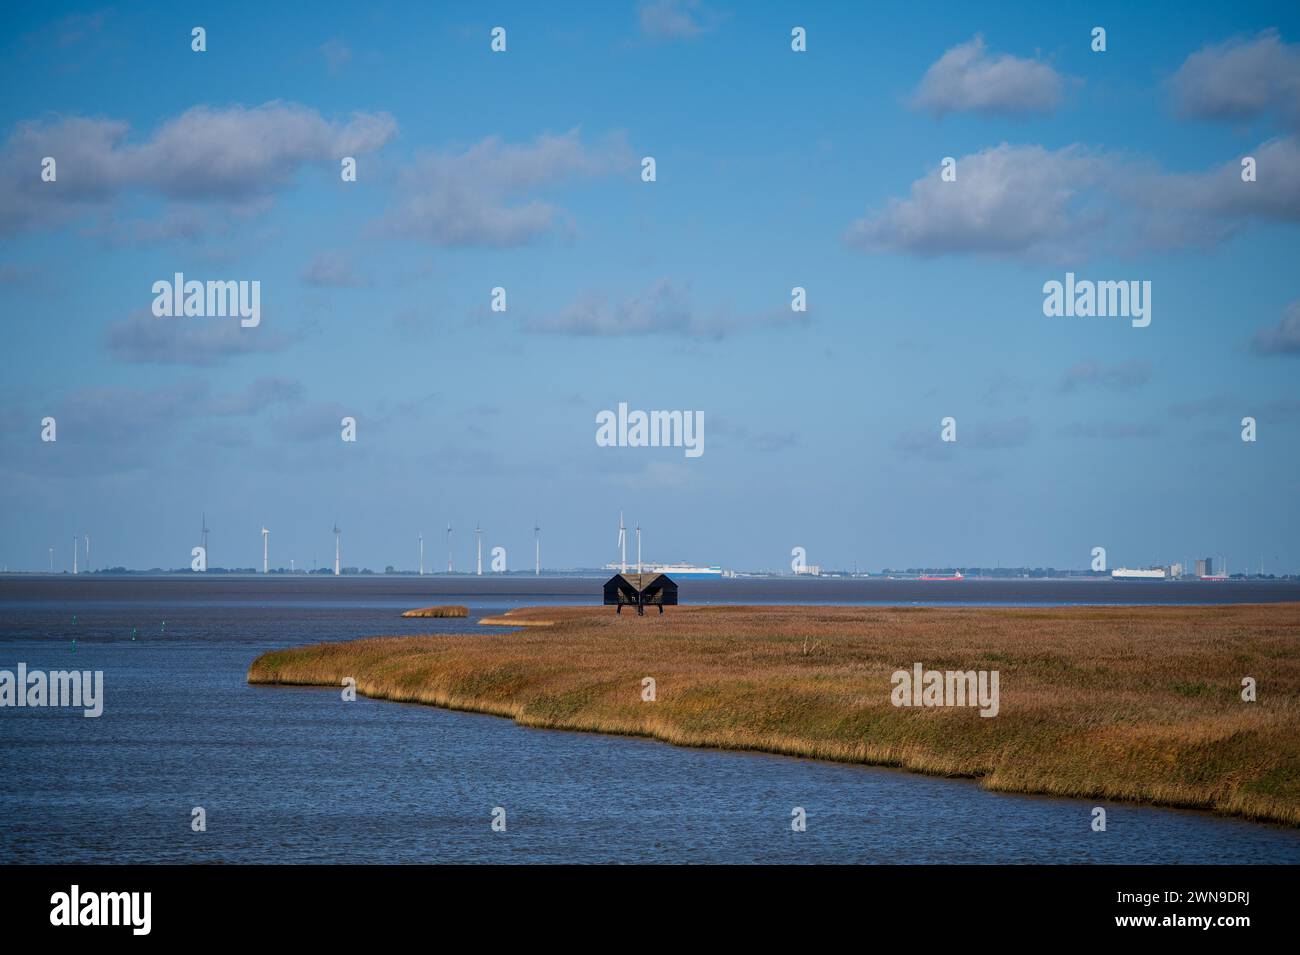 Wildtiere inmitten riesiger Schilffelder, blauem Himmel und Windturbinen am Horizont, Nieuwe Statenzijl, Groningen, Niederlande Stockfoto